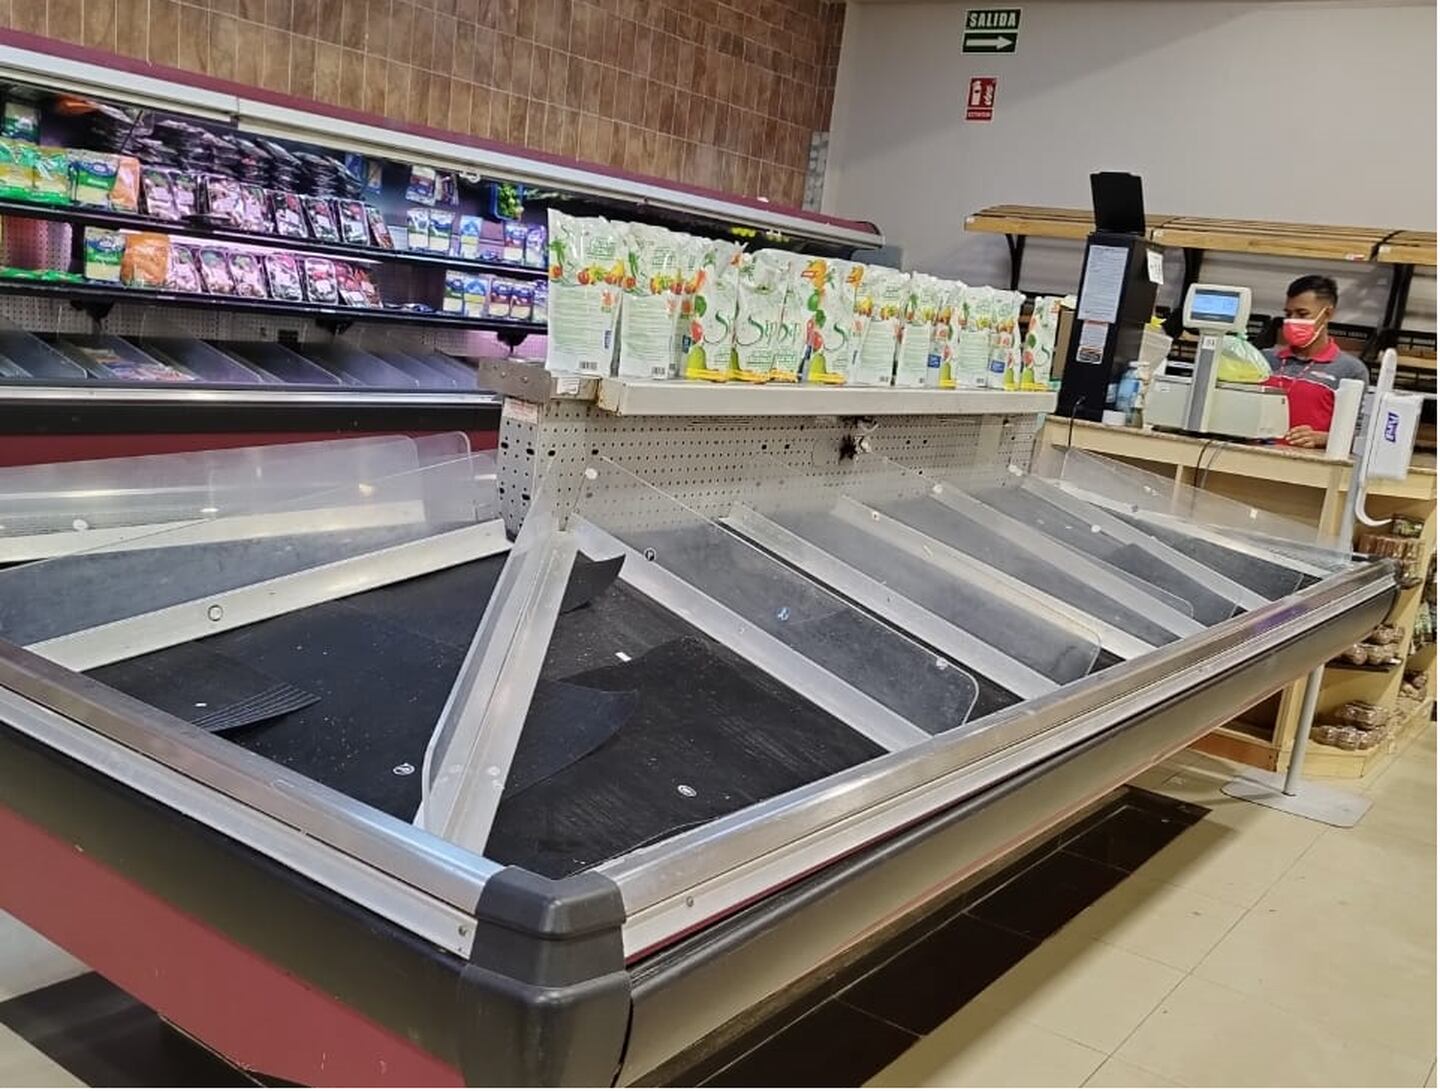 Frutas y legumbres escasean  en las estanterías de los supermercados panameños.dfd